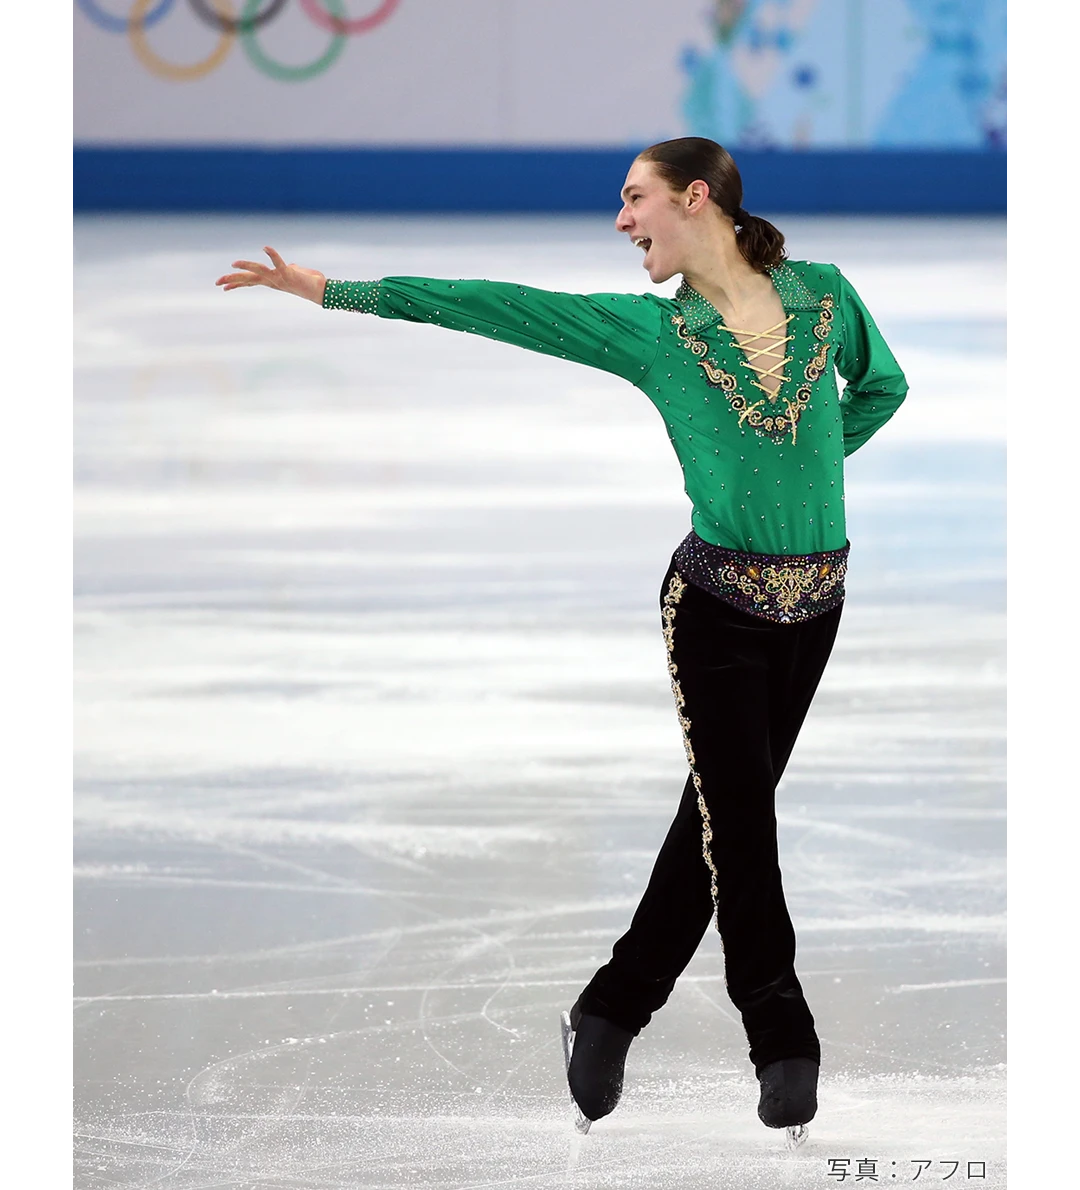 2014年ソチオリンピックで「リバーダンス」を披露したジェイソン・ブラウン選手